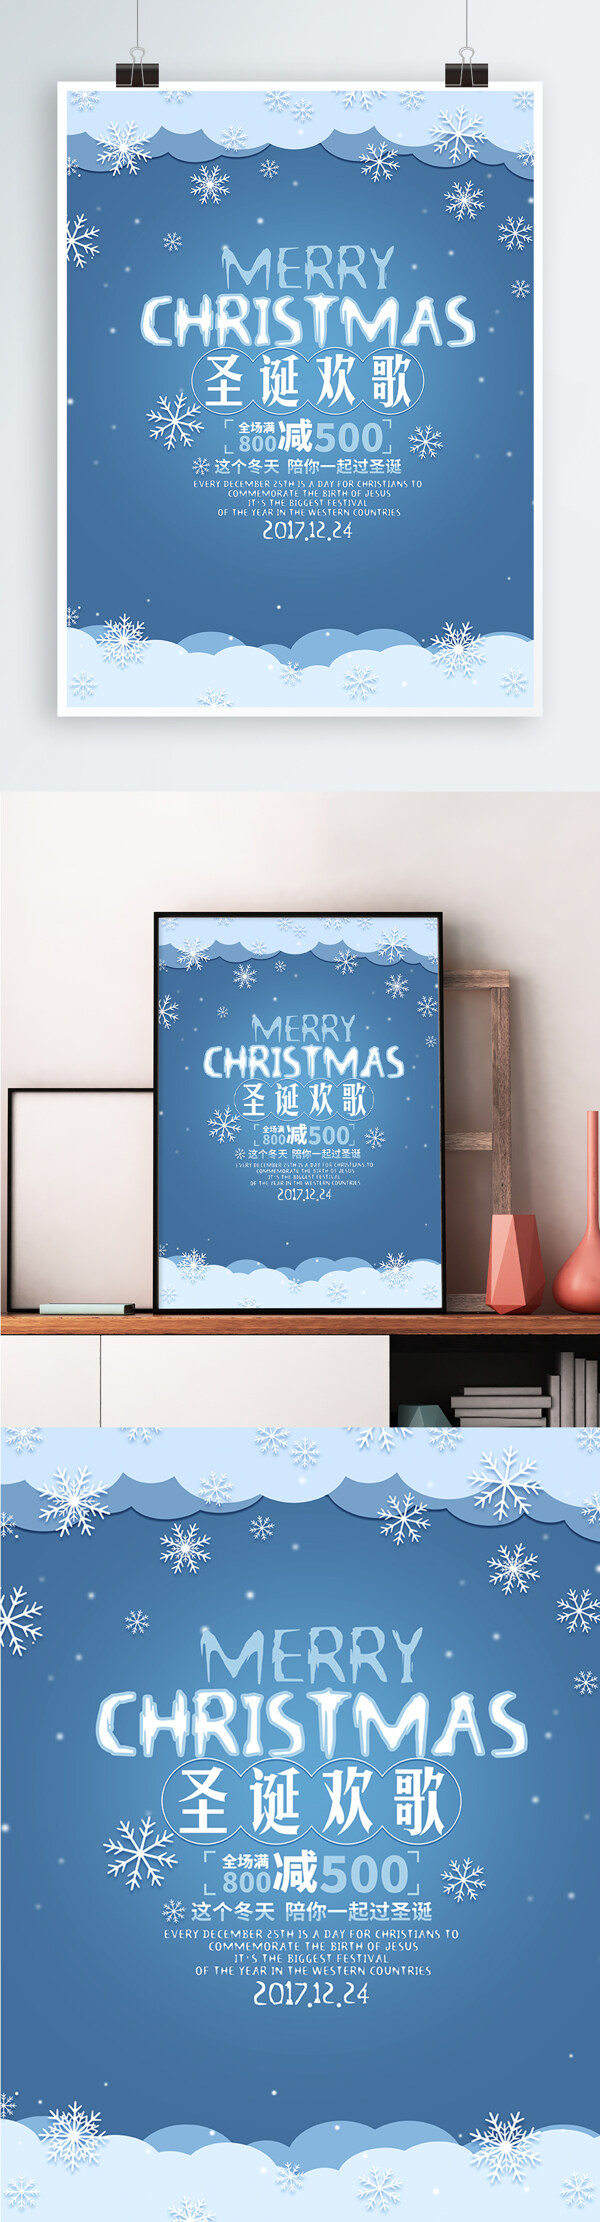 蓝色清新简约圣诞节活动海报矢量素材